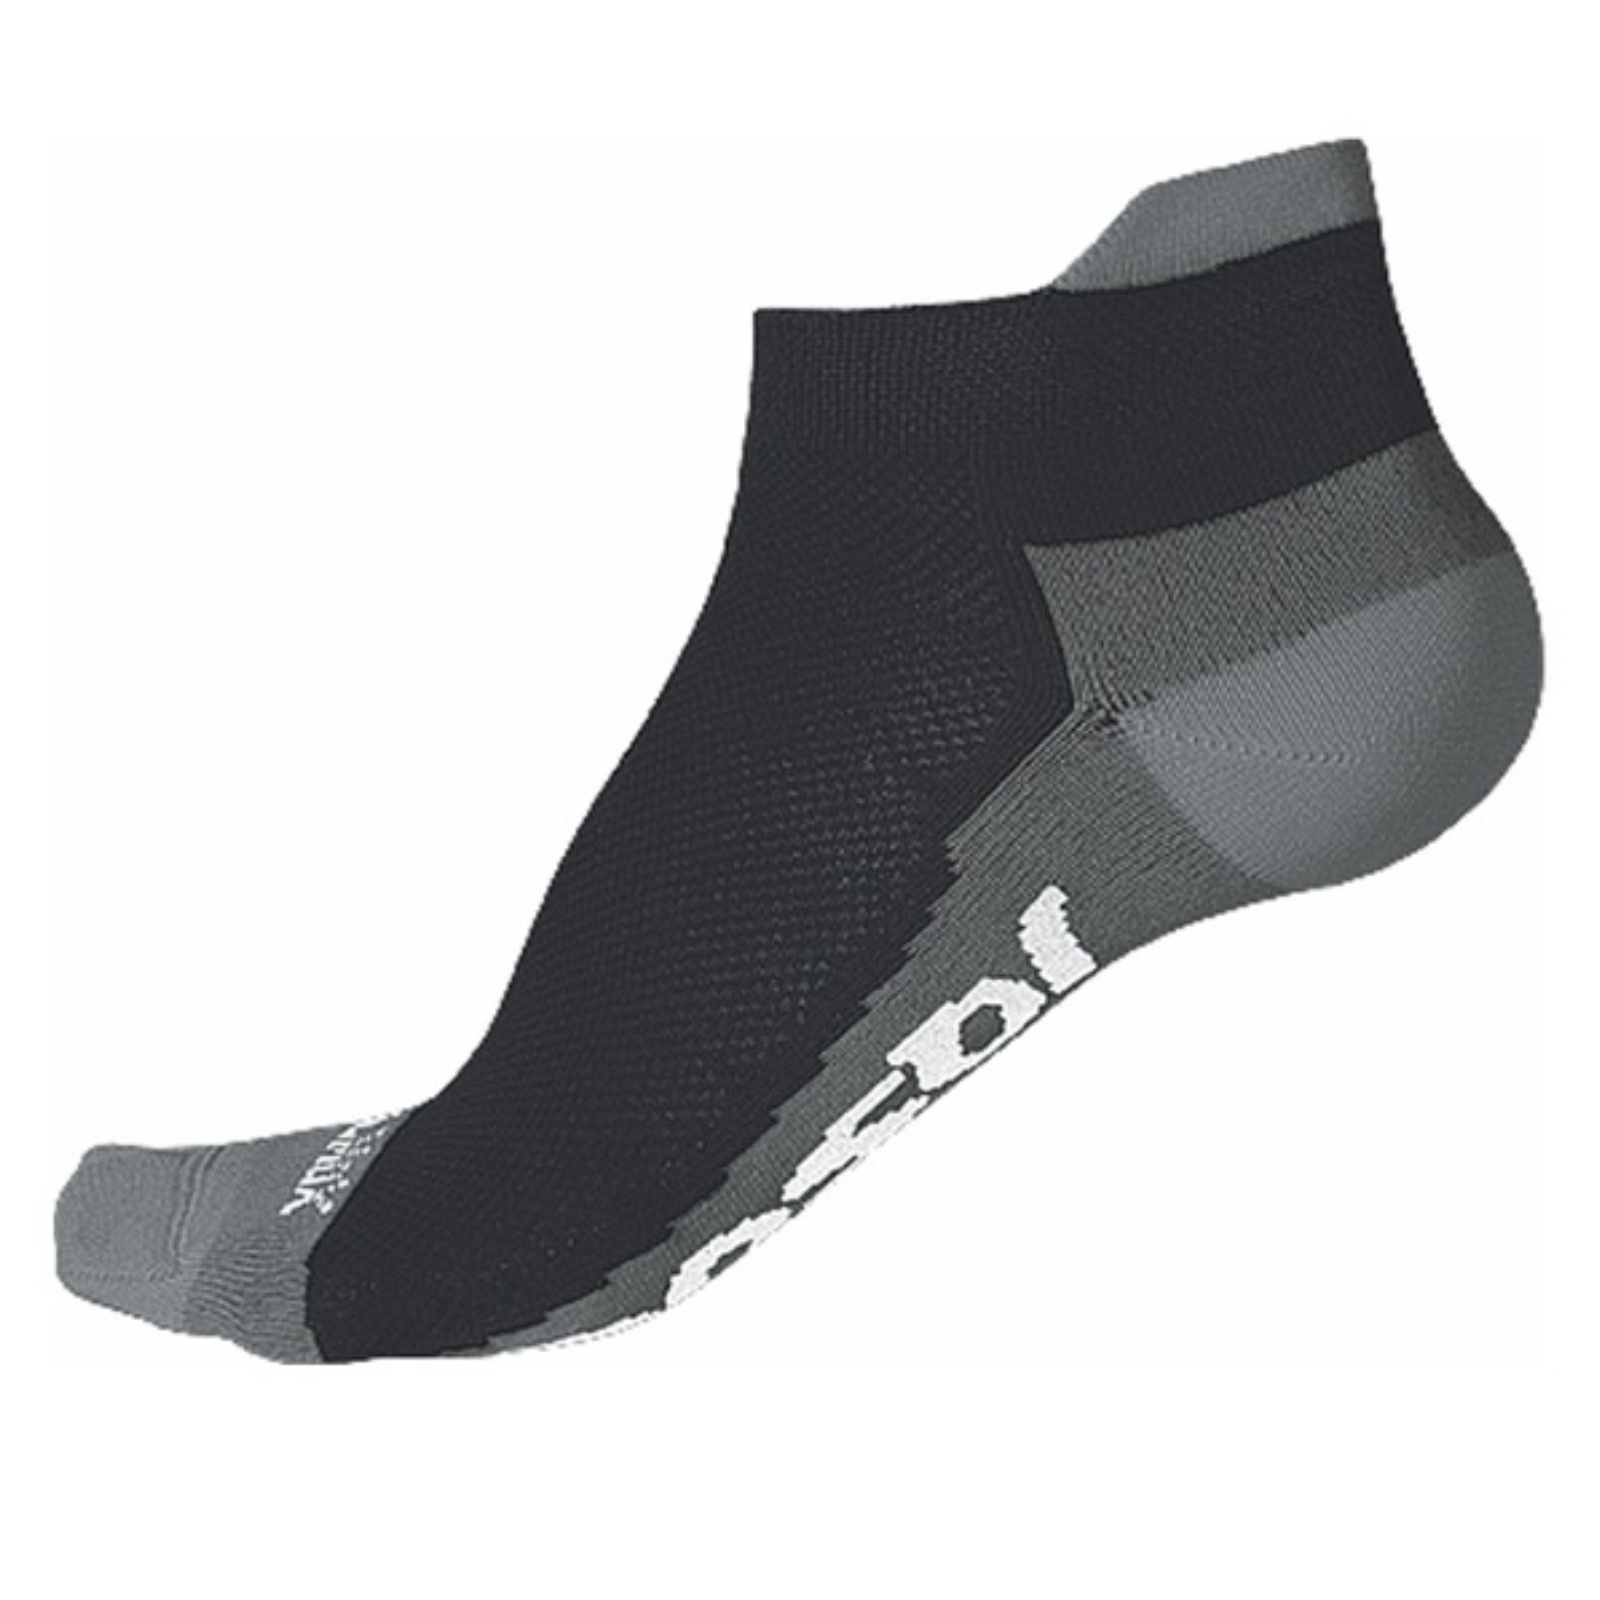 Ponožky SENSOR Coolmax Invisible šedé - veľ. 6-8